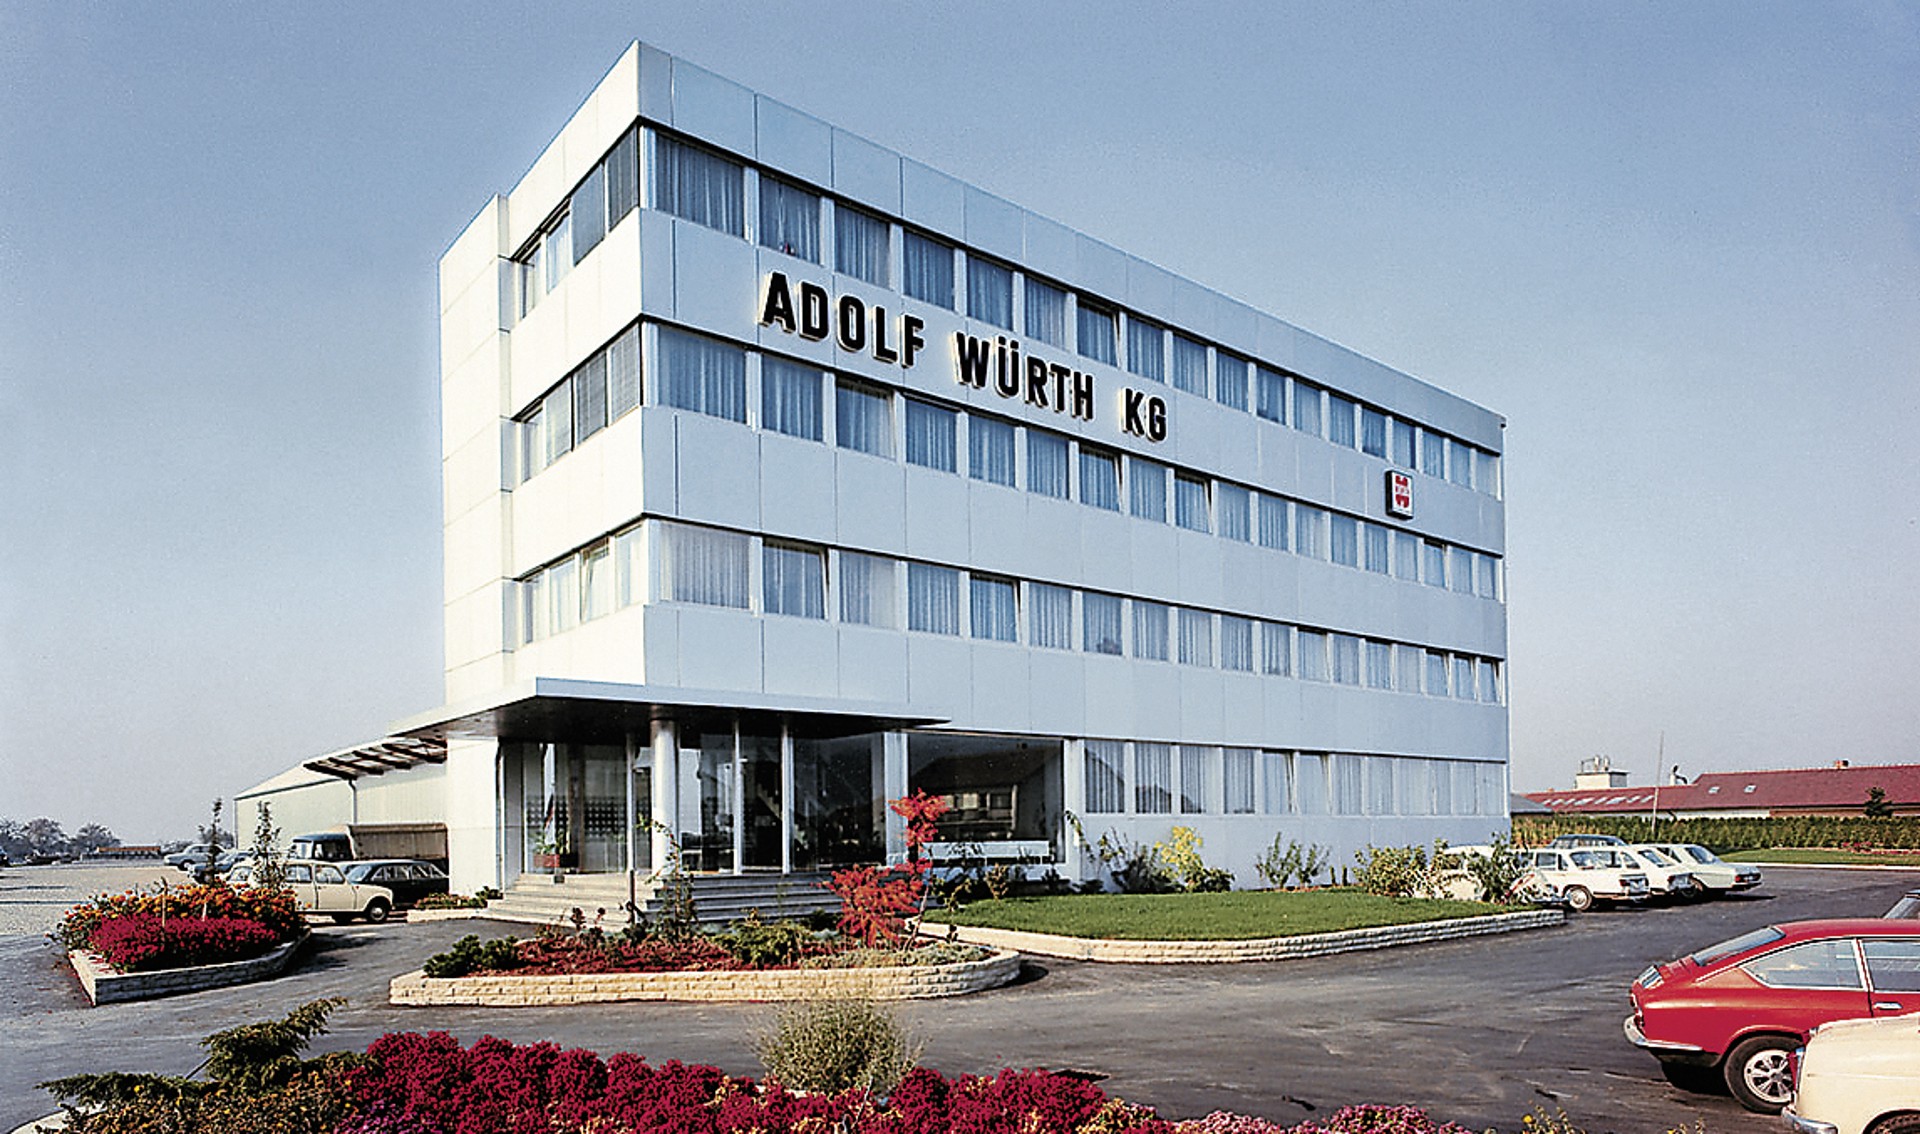 Verwaltungsgebaeude der Adolf Wuerth GmbH und Co. KG im Jahr 1969